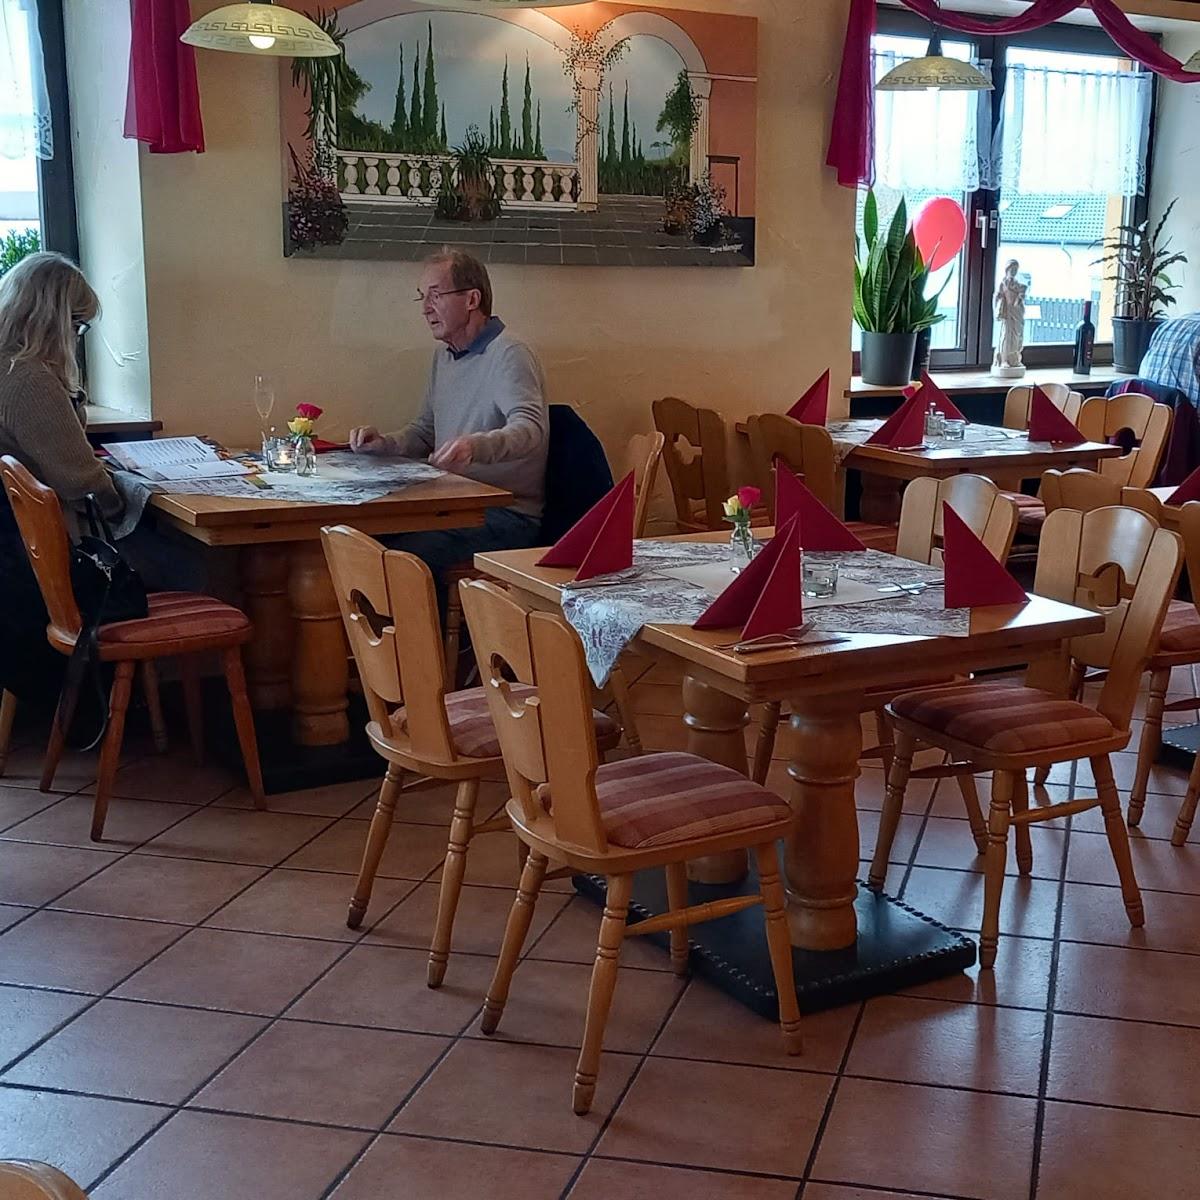 Restaurant "Cabana Grill" in Homburg